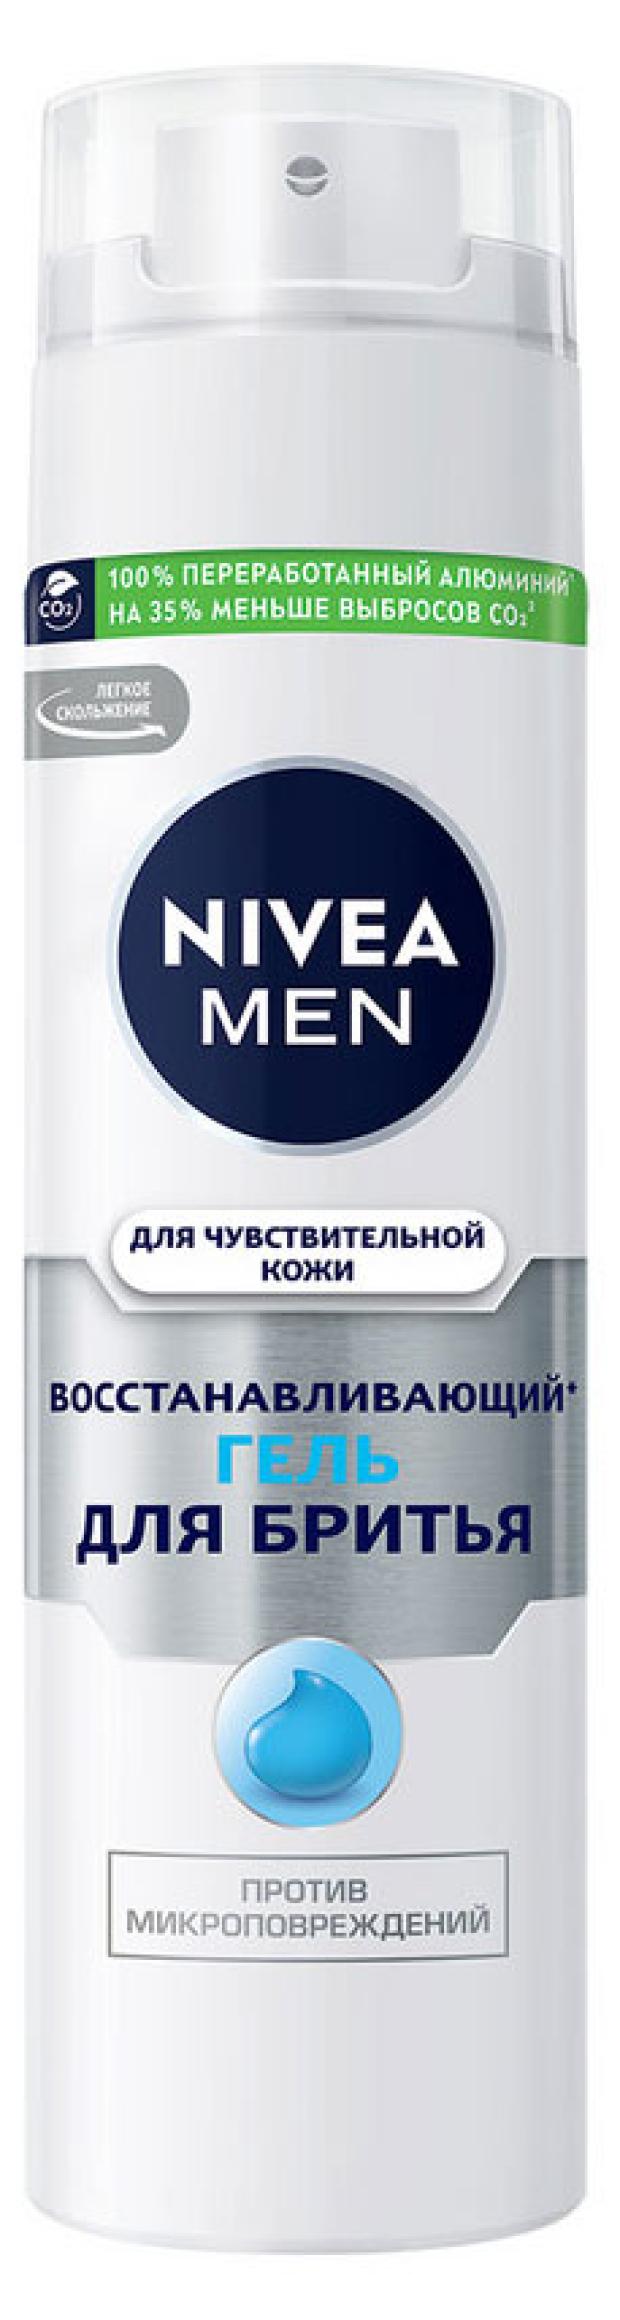 гель для бритья nivea men для чувствительной кожи